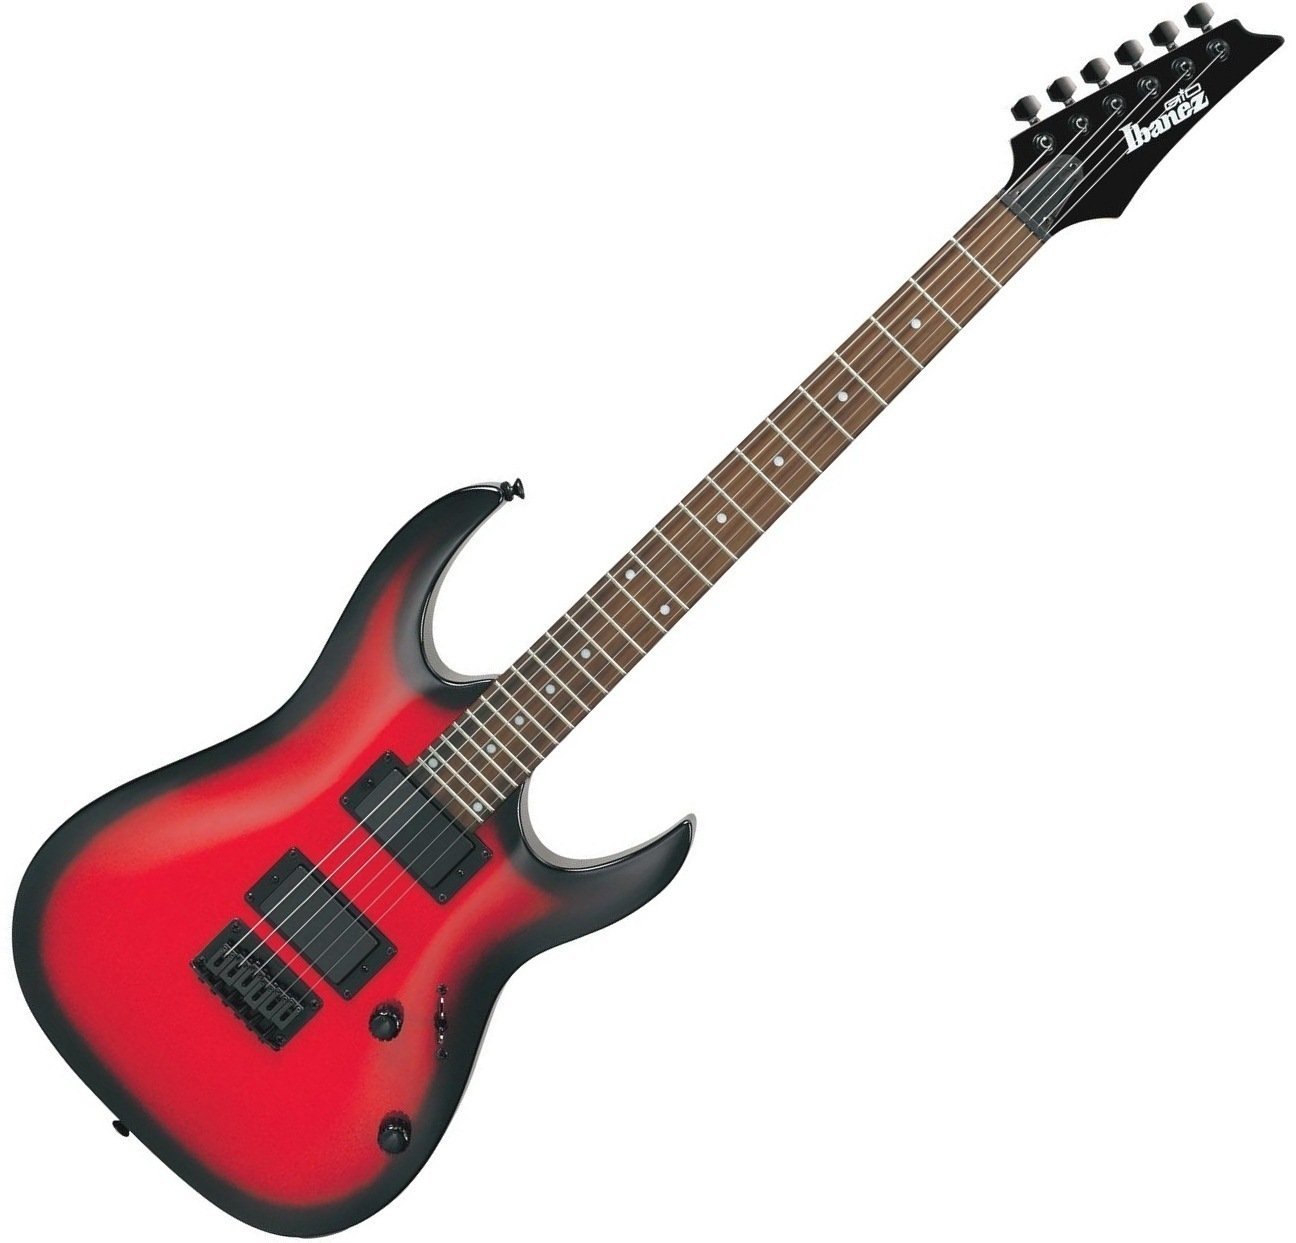 Ηλεκτρική Κιθάρα Ibanez GRGA 32 Metallic Red Sunburst